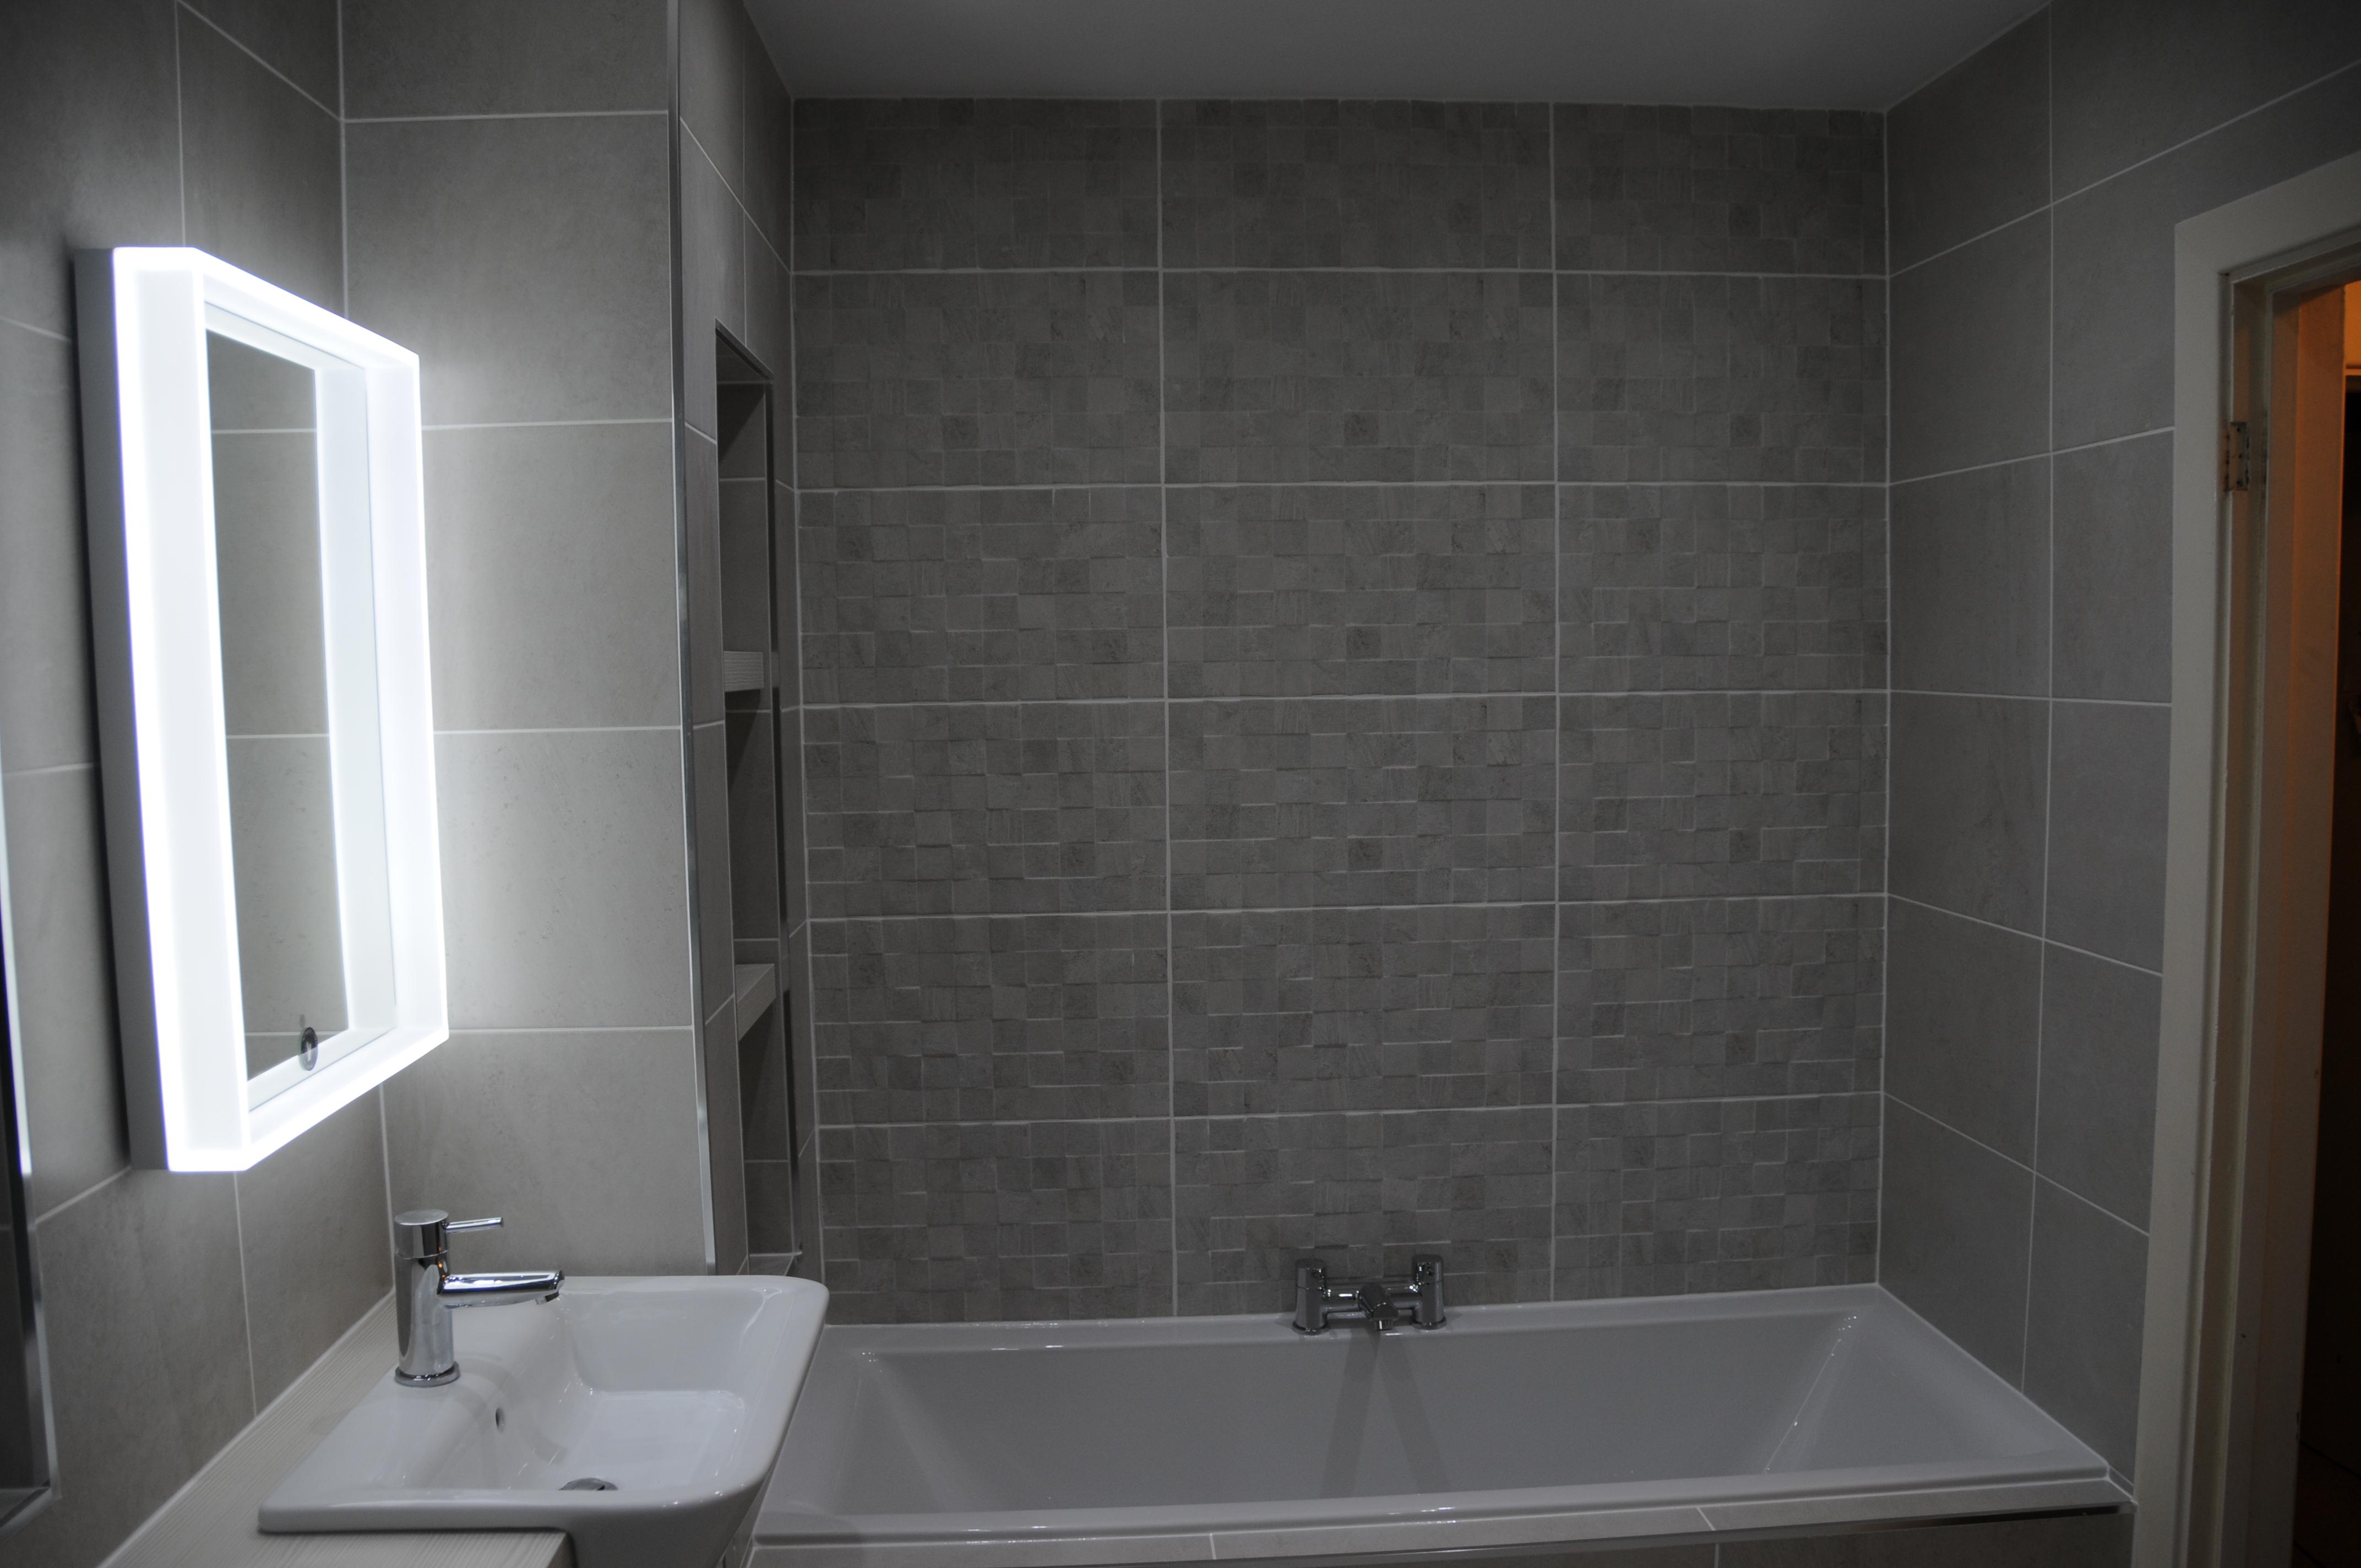 Images TW Thomas Bathrooms & Tiles